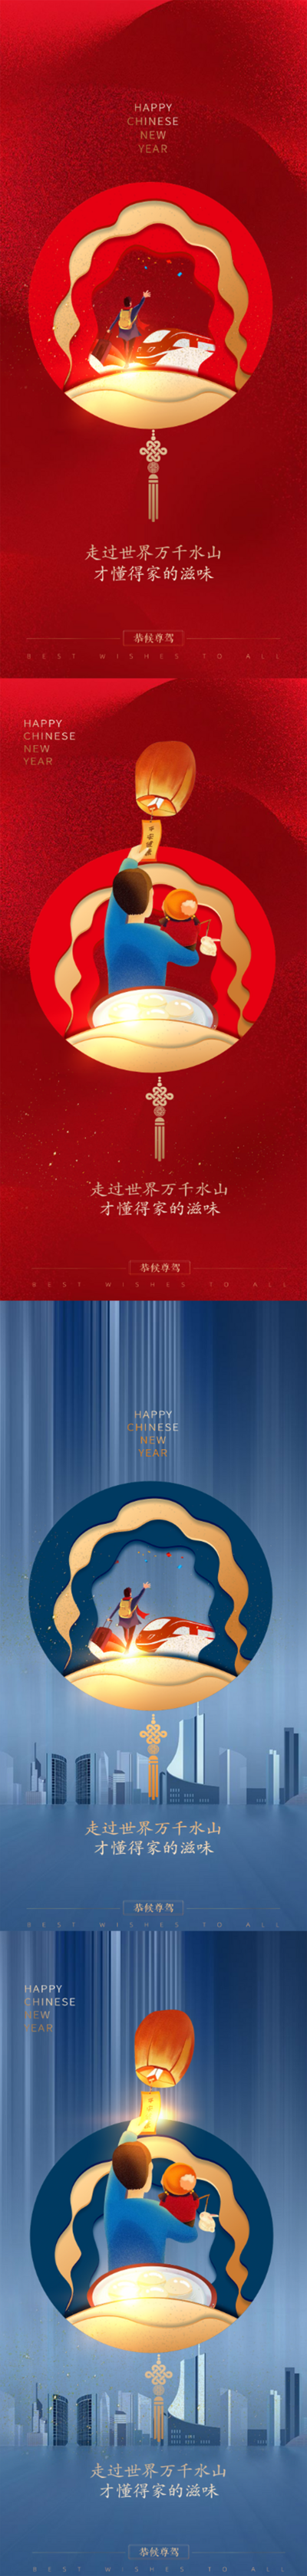 南门网 海报 中国传统节日 春节 元宵节 插画 灯笼 人物 城市